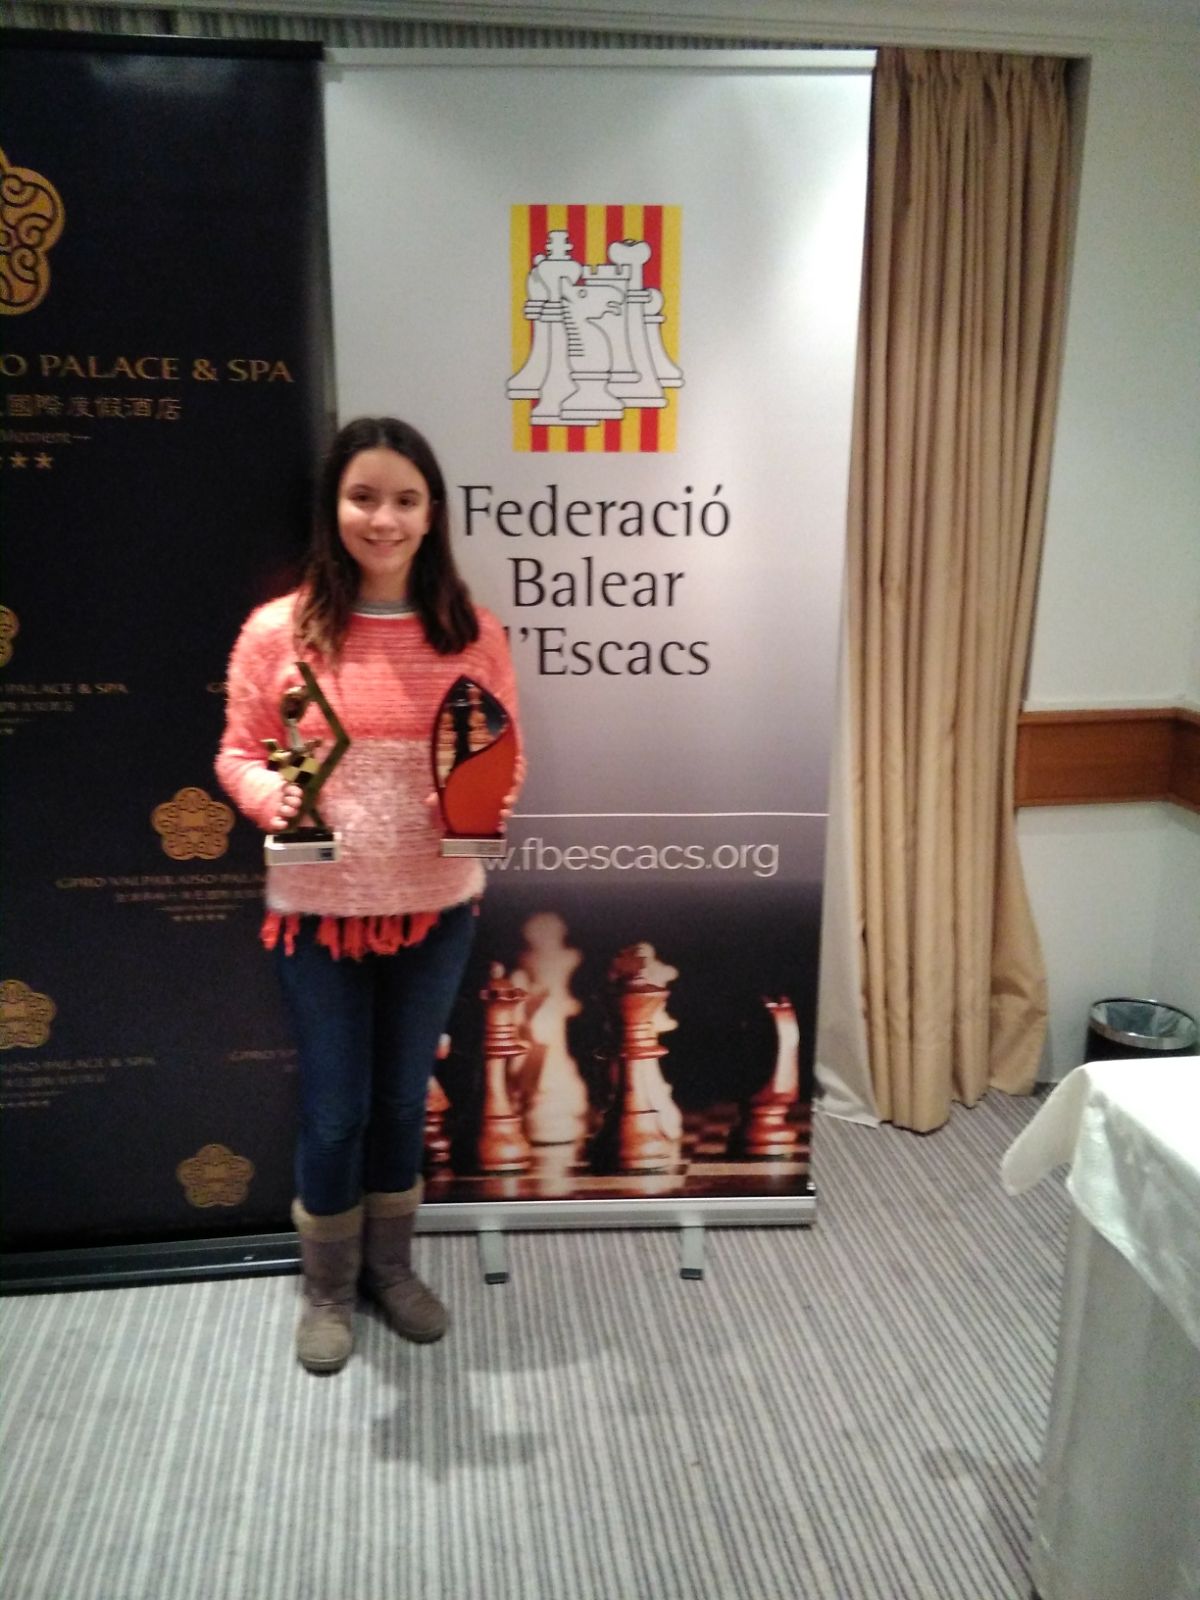 Susana Rubert, campiona juvenil de Mallorca d'escacs